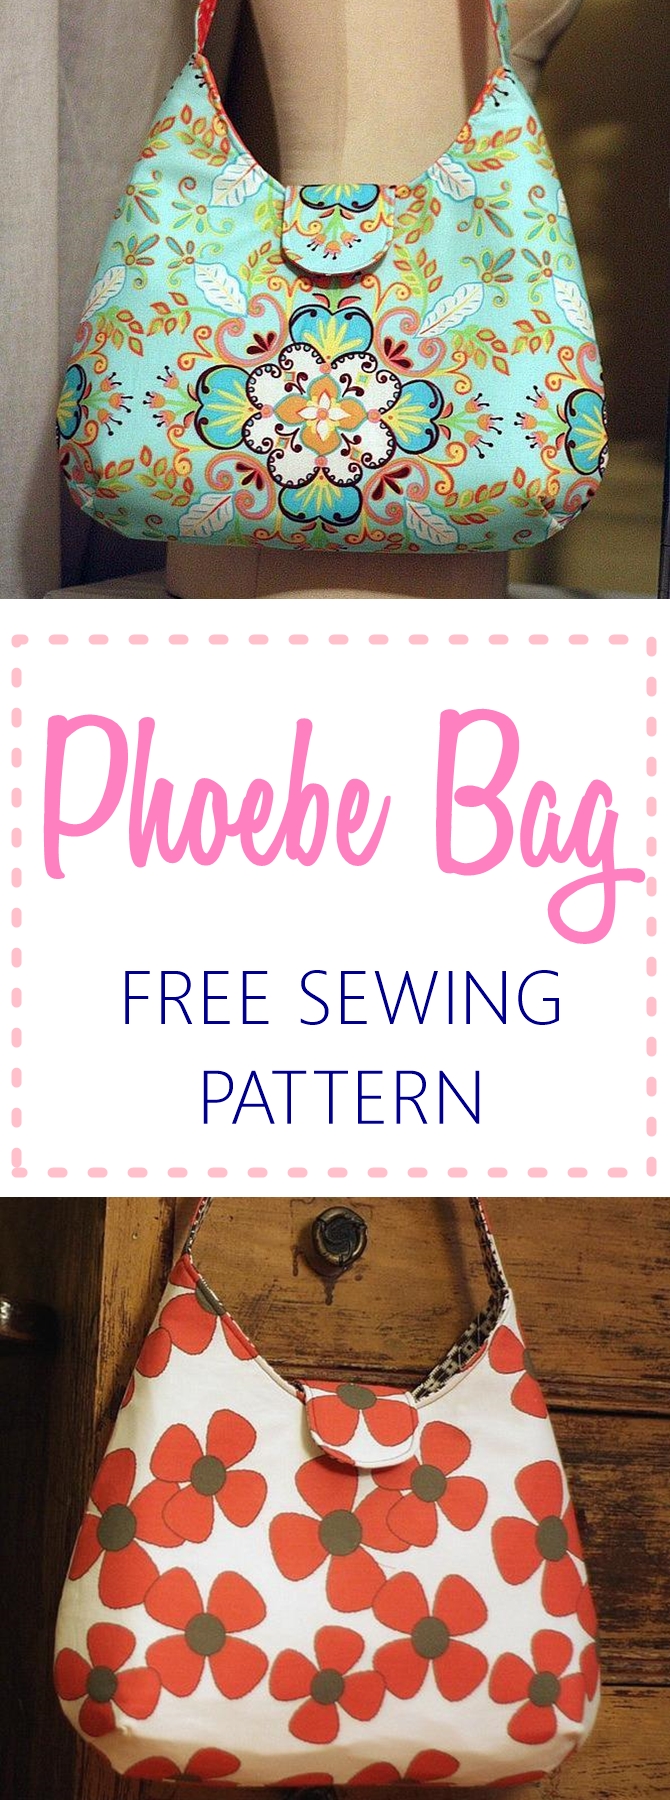 Phoebe Bag – Free Sewing Pattern